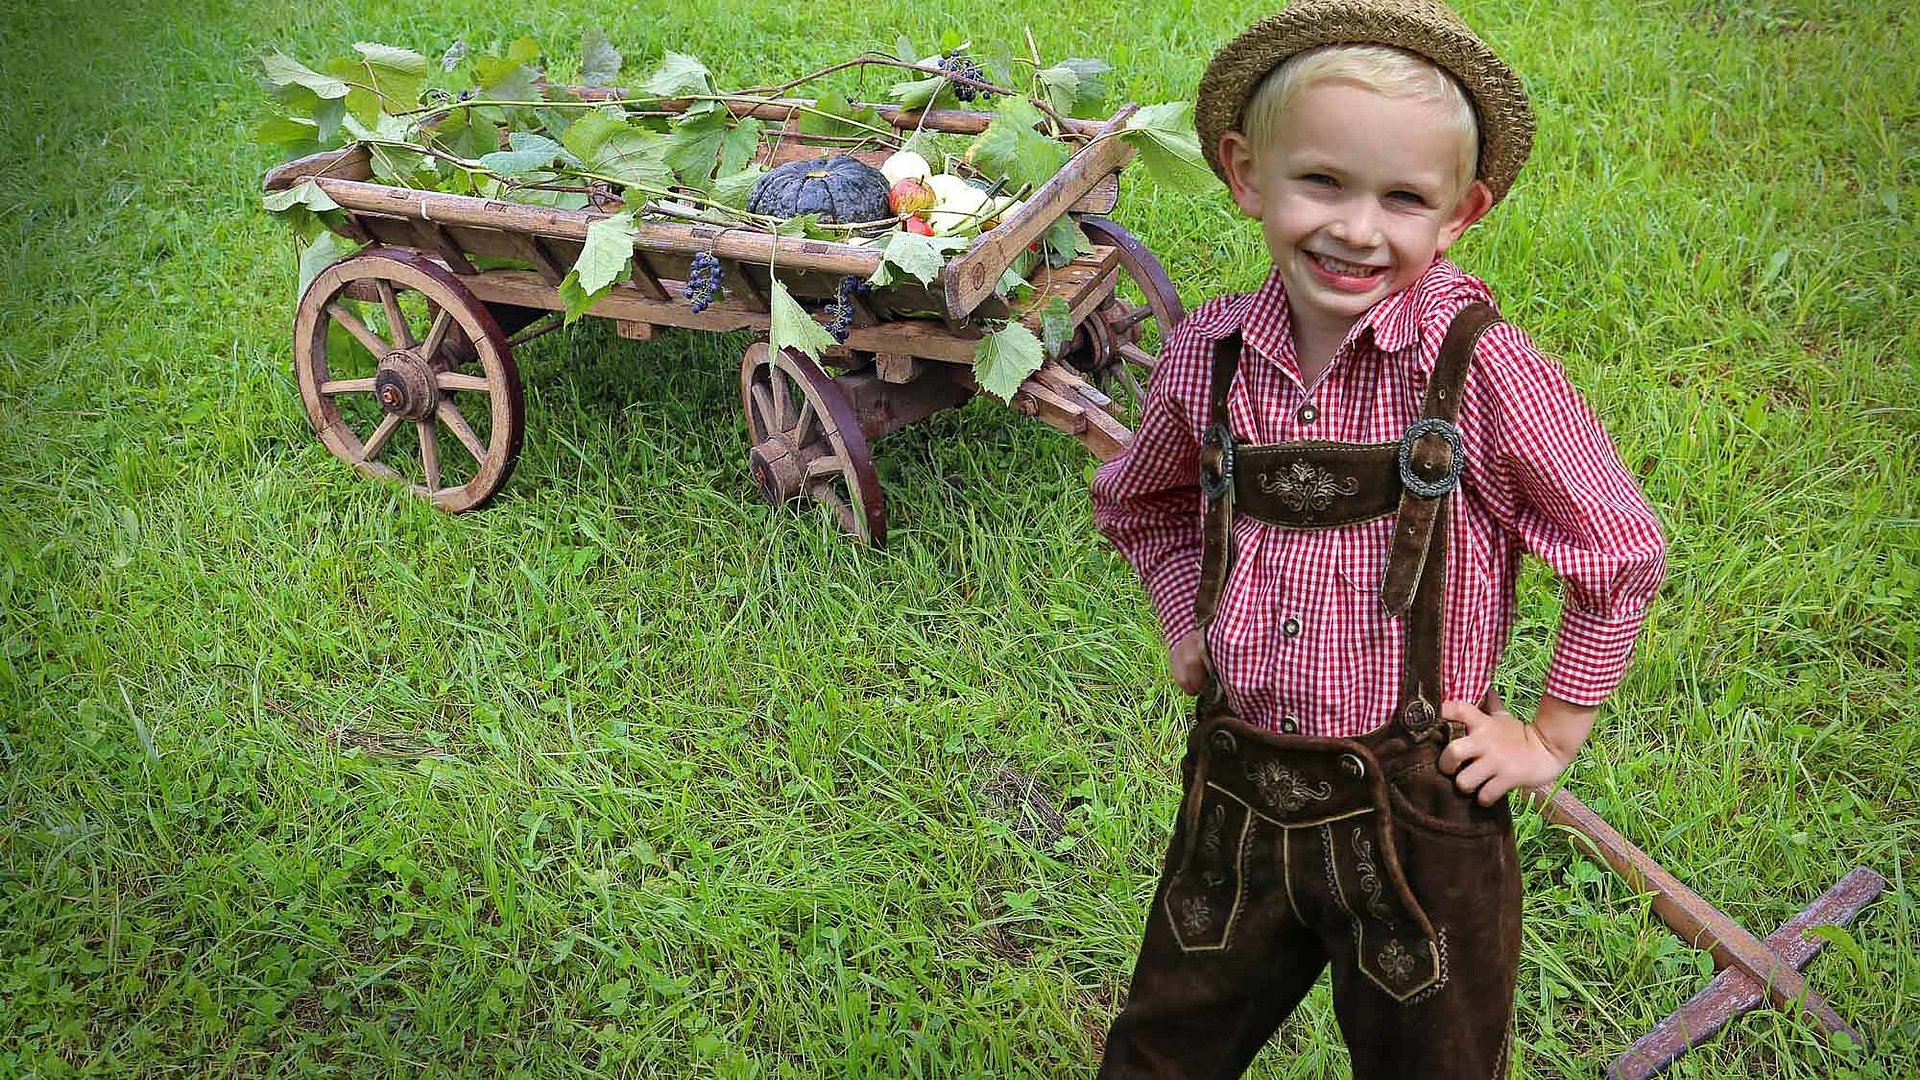 Kinderfreundliche Angebote in Nürnberg - Erlebnisse für die gesamte Familie -kleiner Junge in traditionell bayerischer Kleidung steht auf einer Wiese